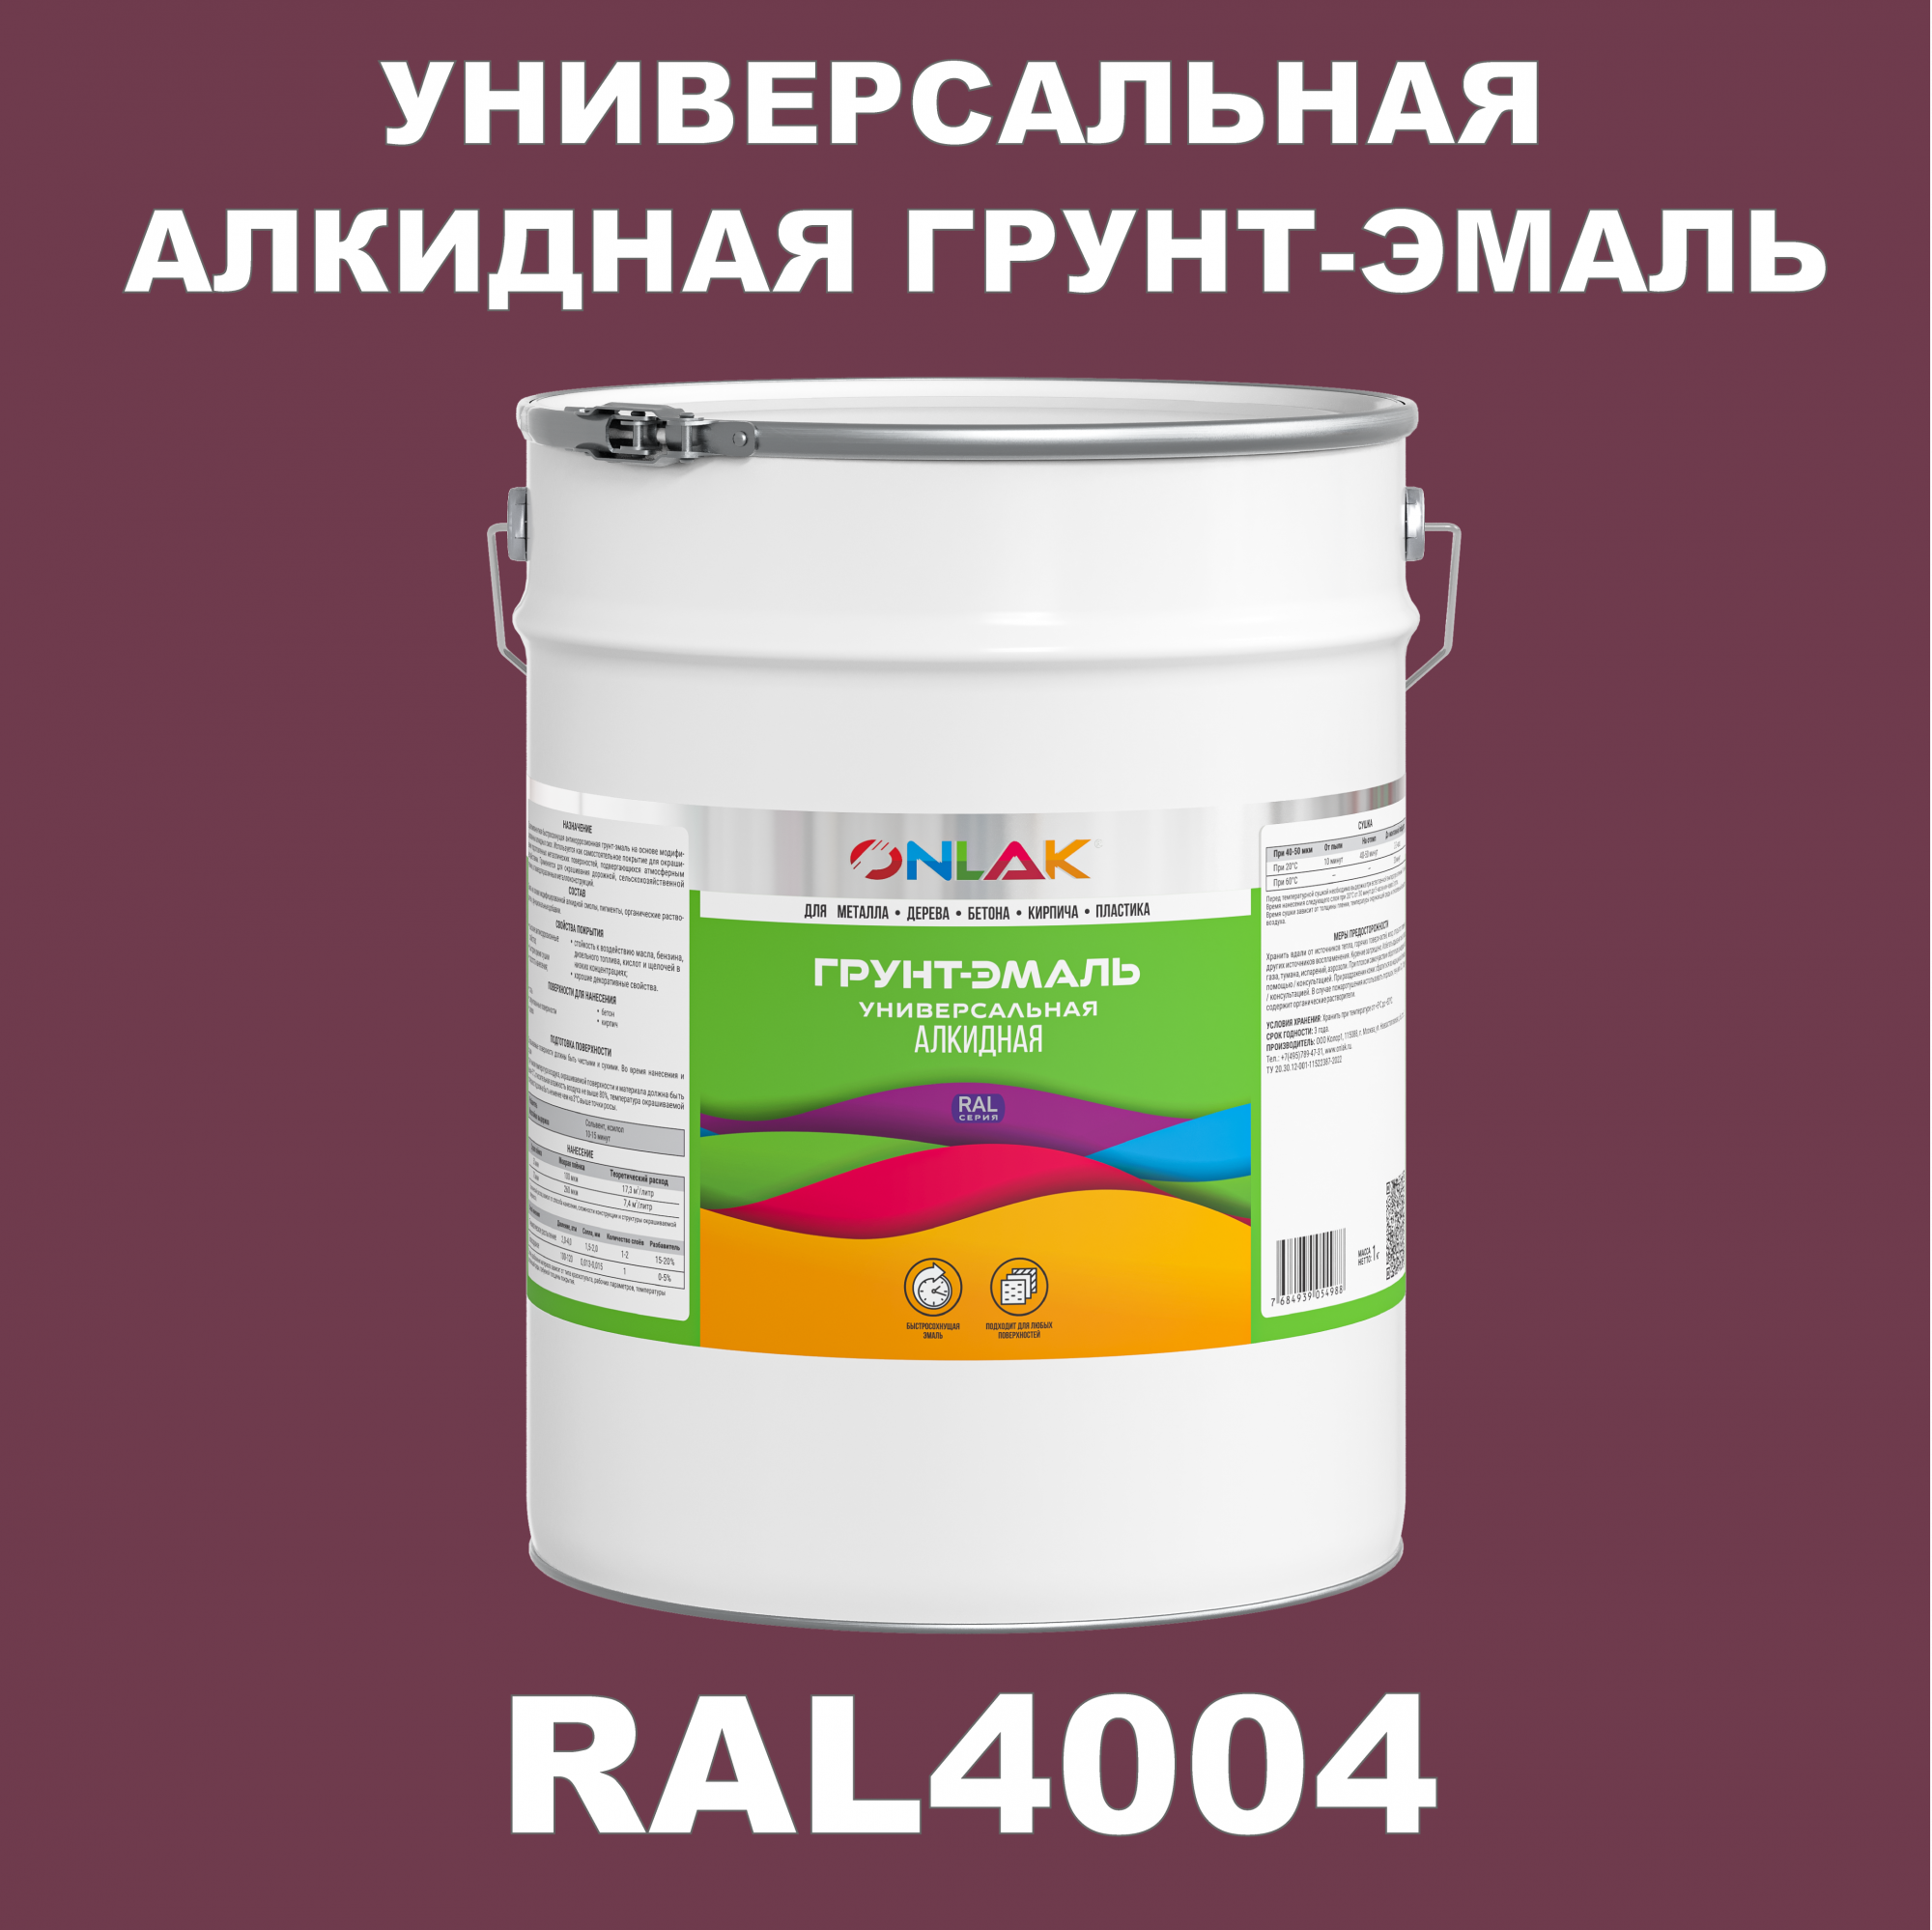 Грунт-эмаль ONLAK 1К RAL4004 антикоррозионная алкидная по металлу по ржавчине 20 кг антикоррозионная грунт эмаль onlak ral 4009 фиолетовый 593 мл